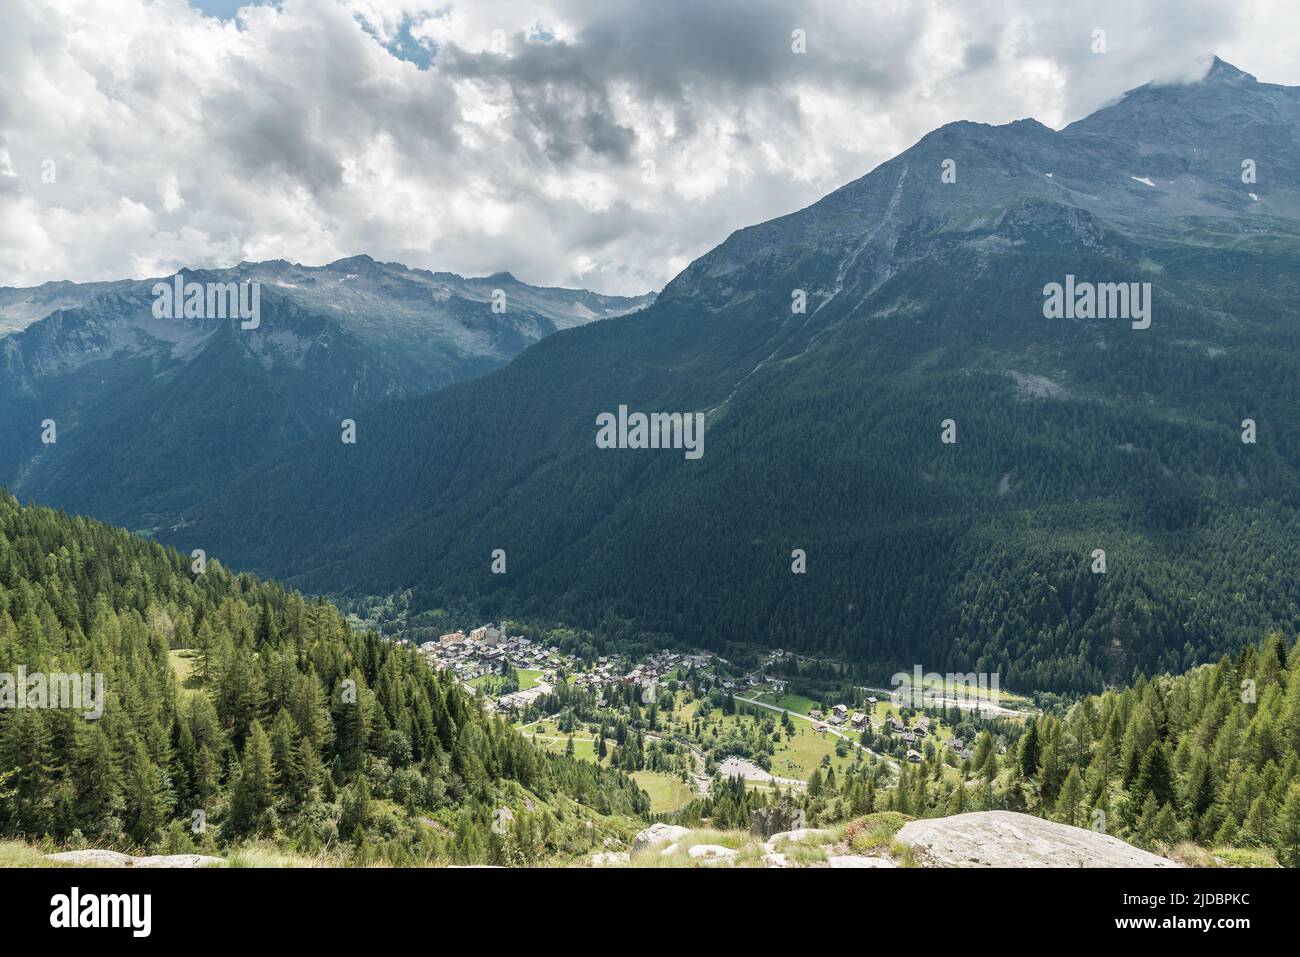 Pueblo de montaña en los Alpes italianos a los pies de Monte Rosa. Macugnaga, importante complejo de montaña de verano e invierno en Italia Foto de stock